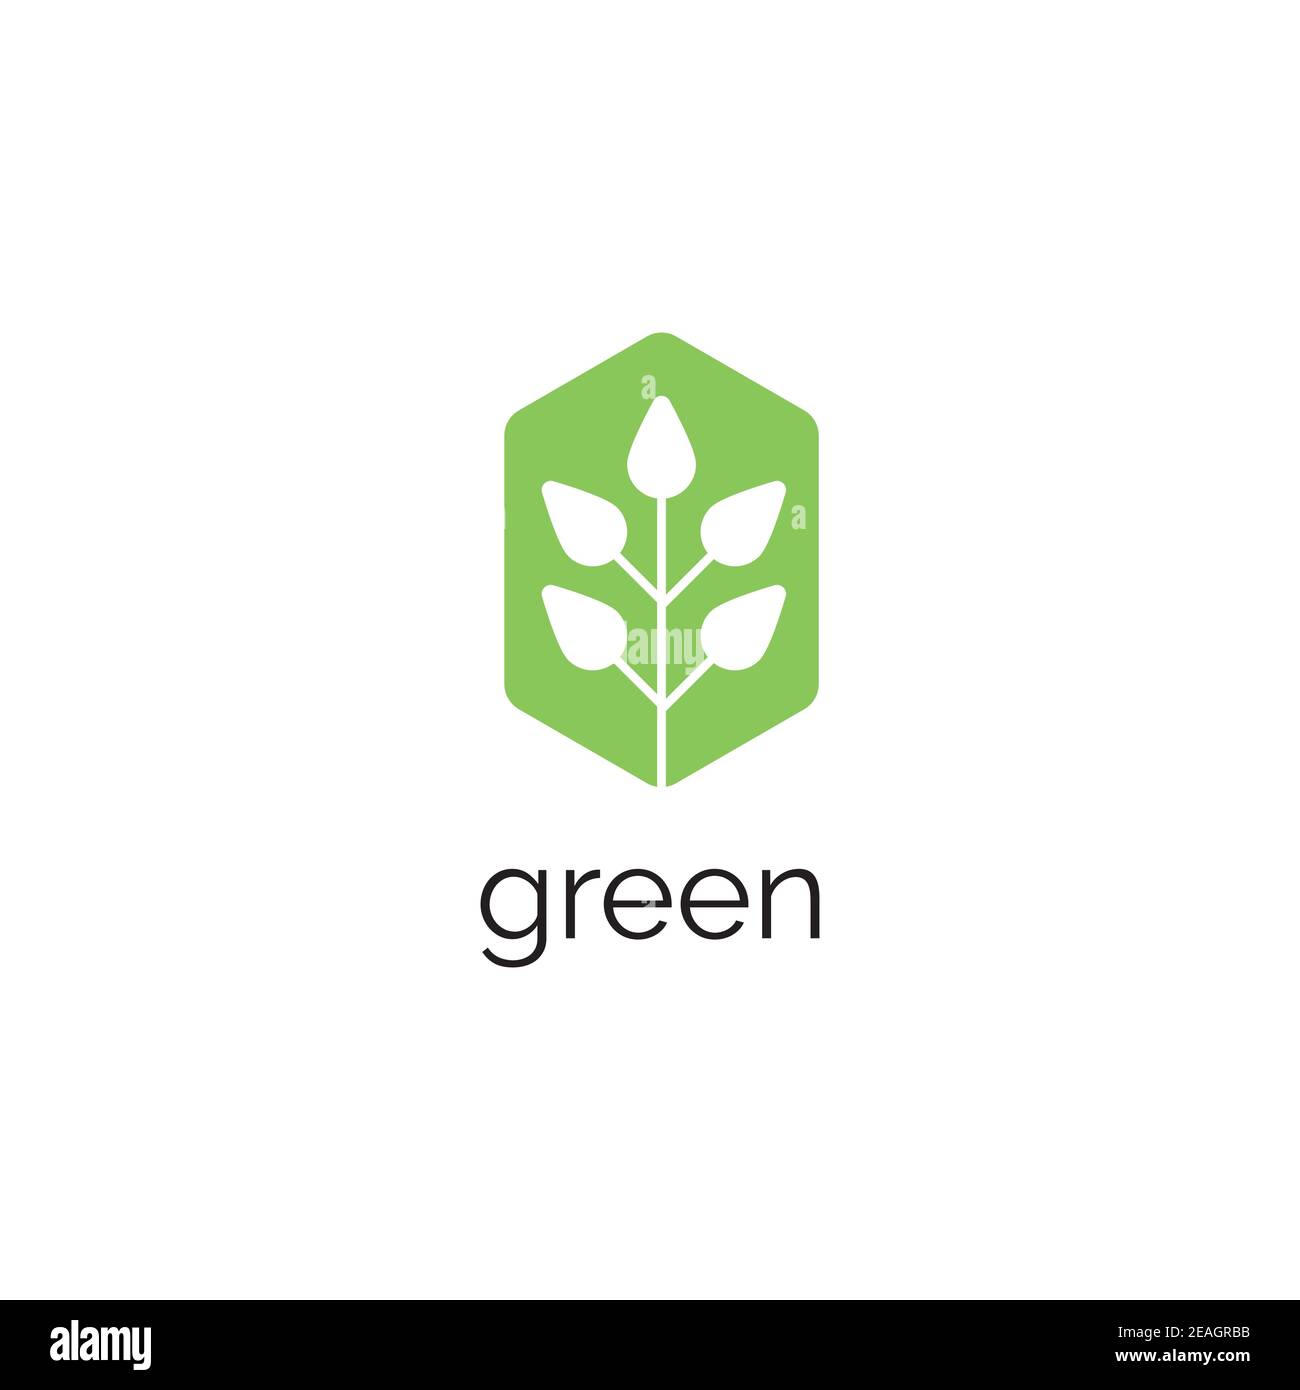 Green leaf logo design vector template Stock Vector